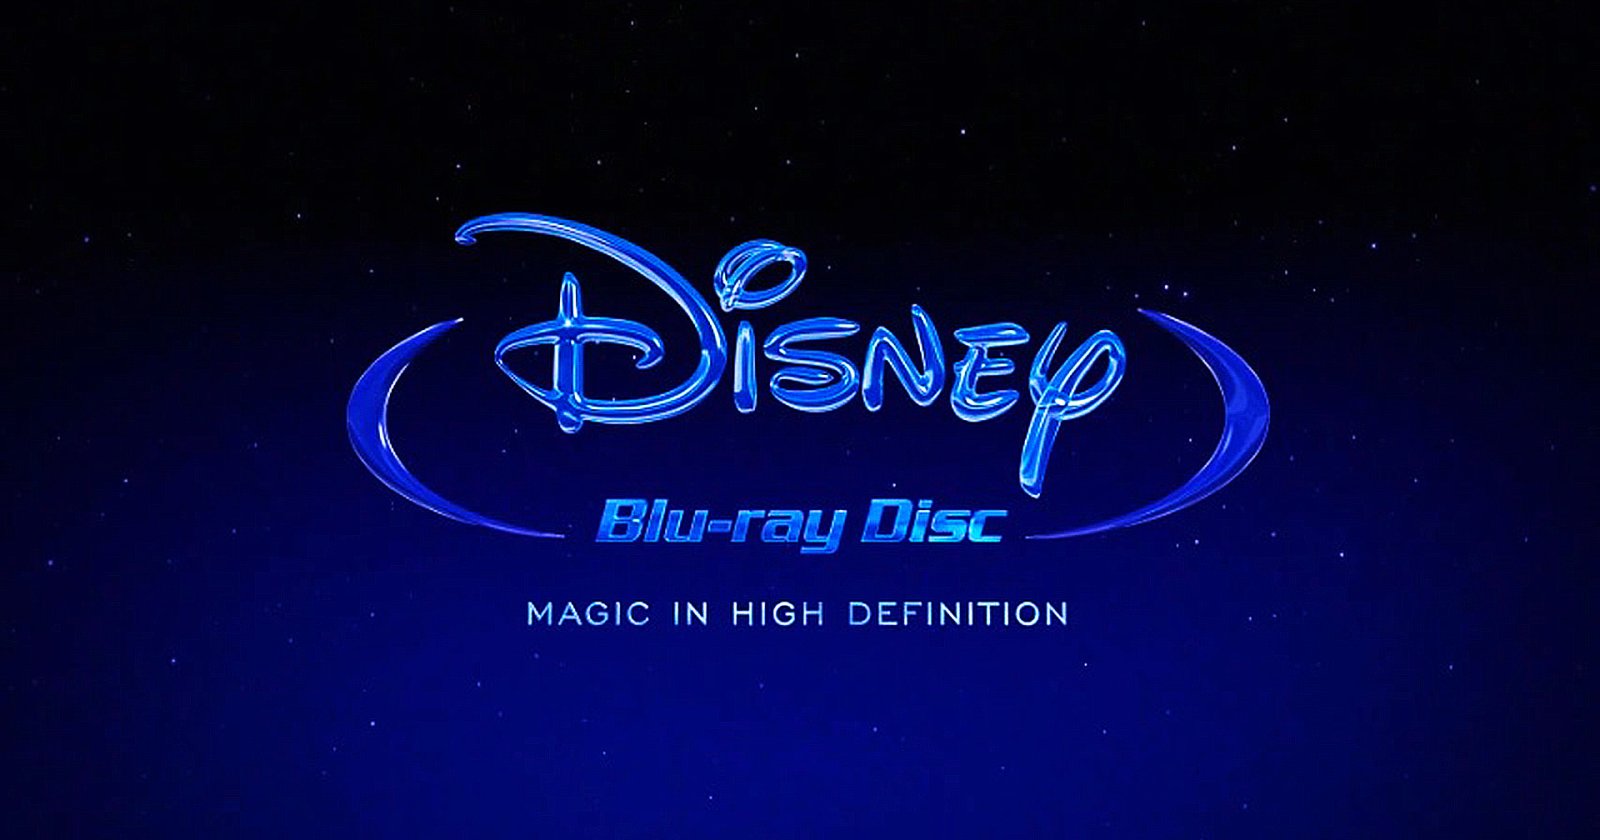 Disney ปรับแผนการตลาดครั้งใหญ่: เตรียมเลิกขาย DVD และ Blu-Ray ในออสเตรเลีย